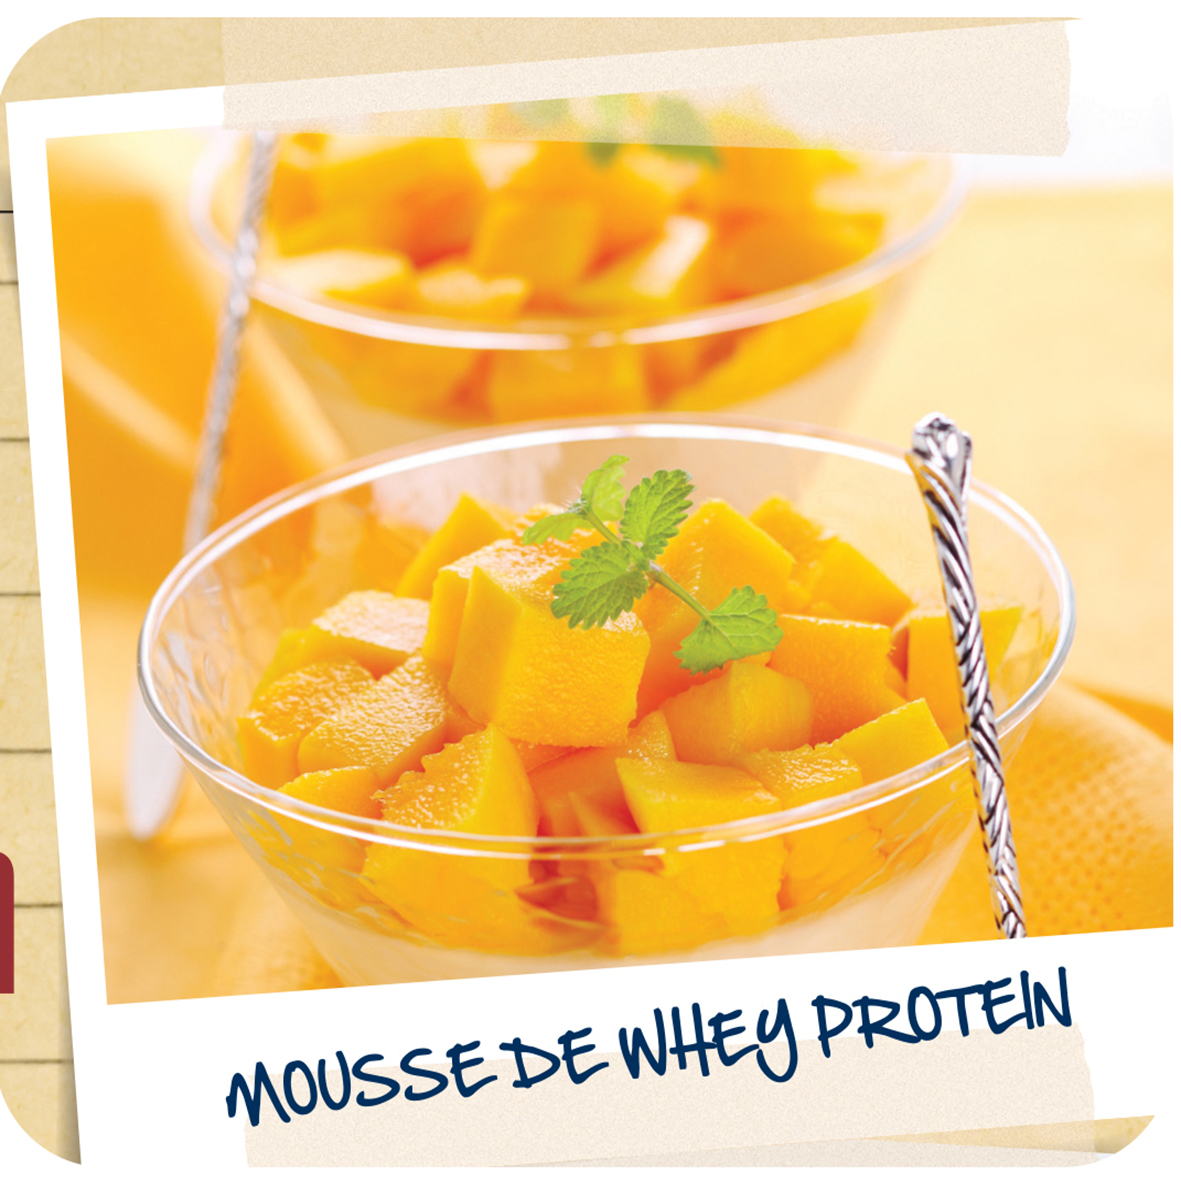 Suplementação Gourmet: Mousse de whey protein